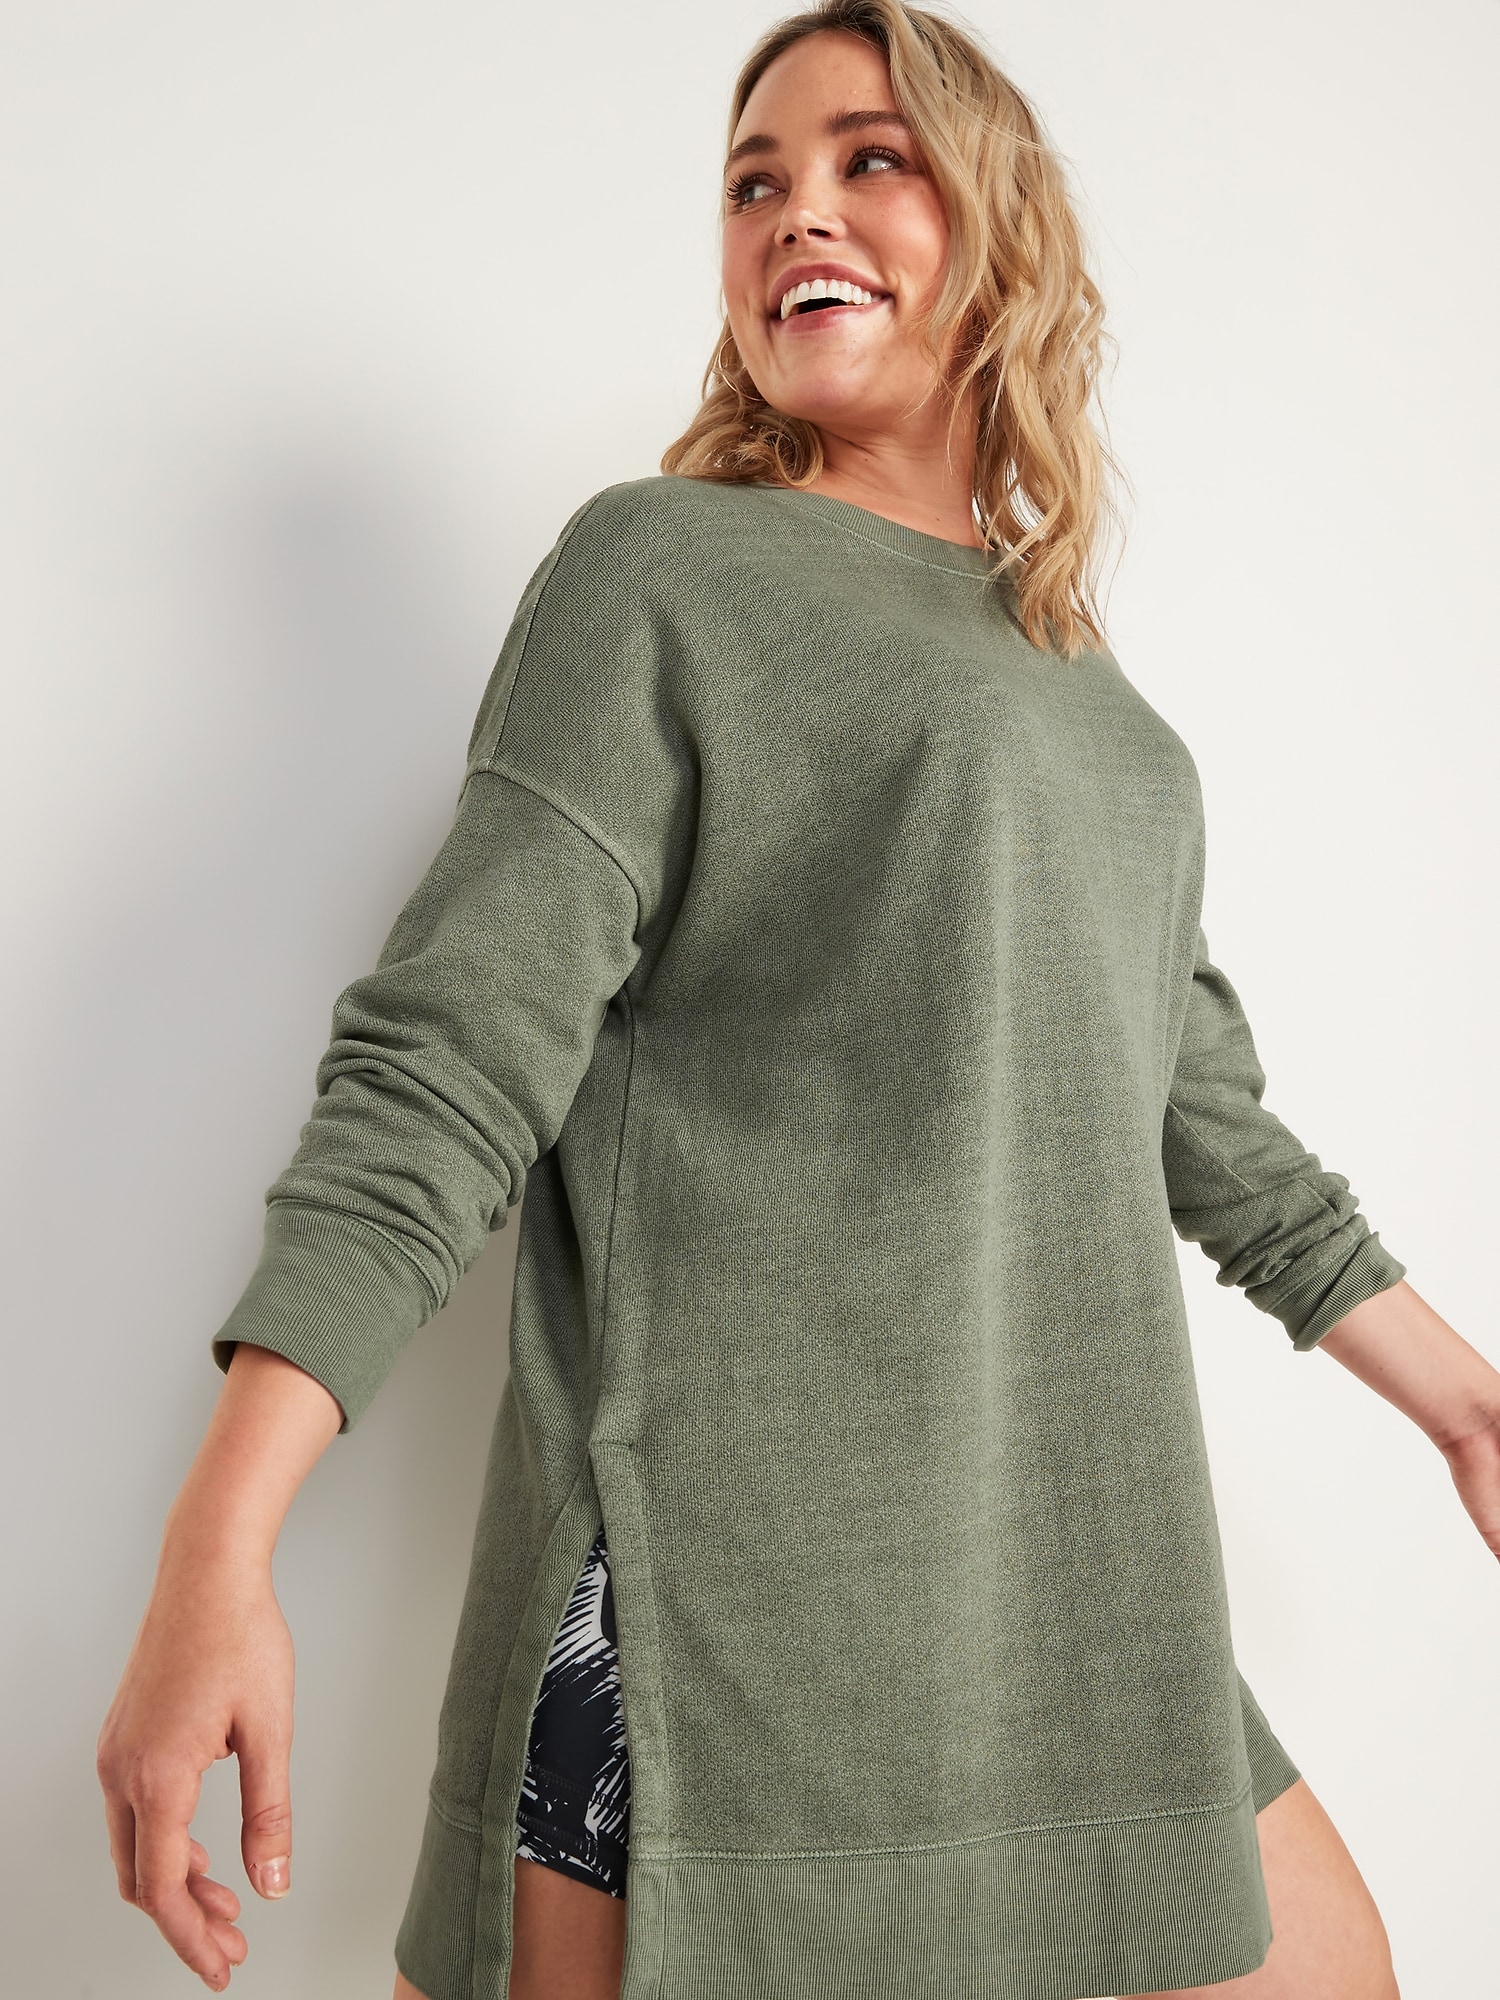 Loose Cali-Fleece Terry Tunic Sweatshirt for Women